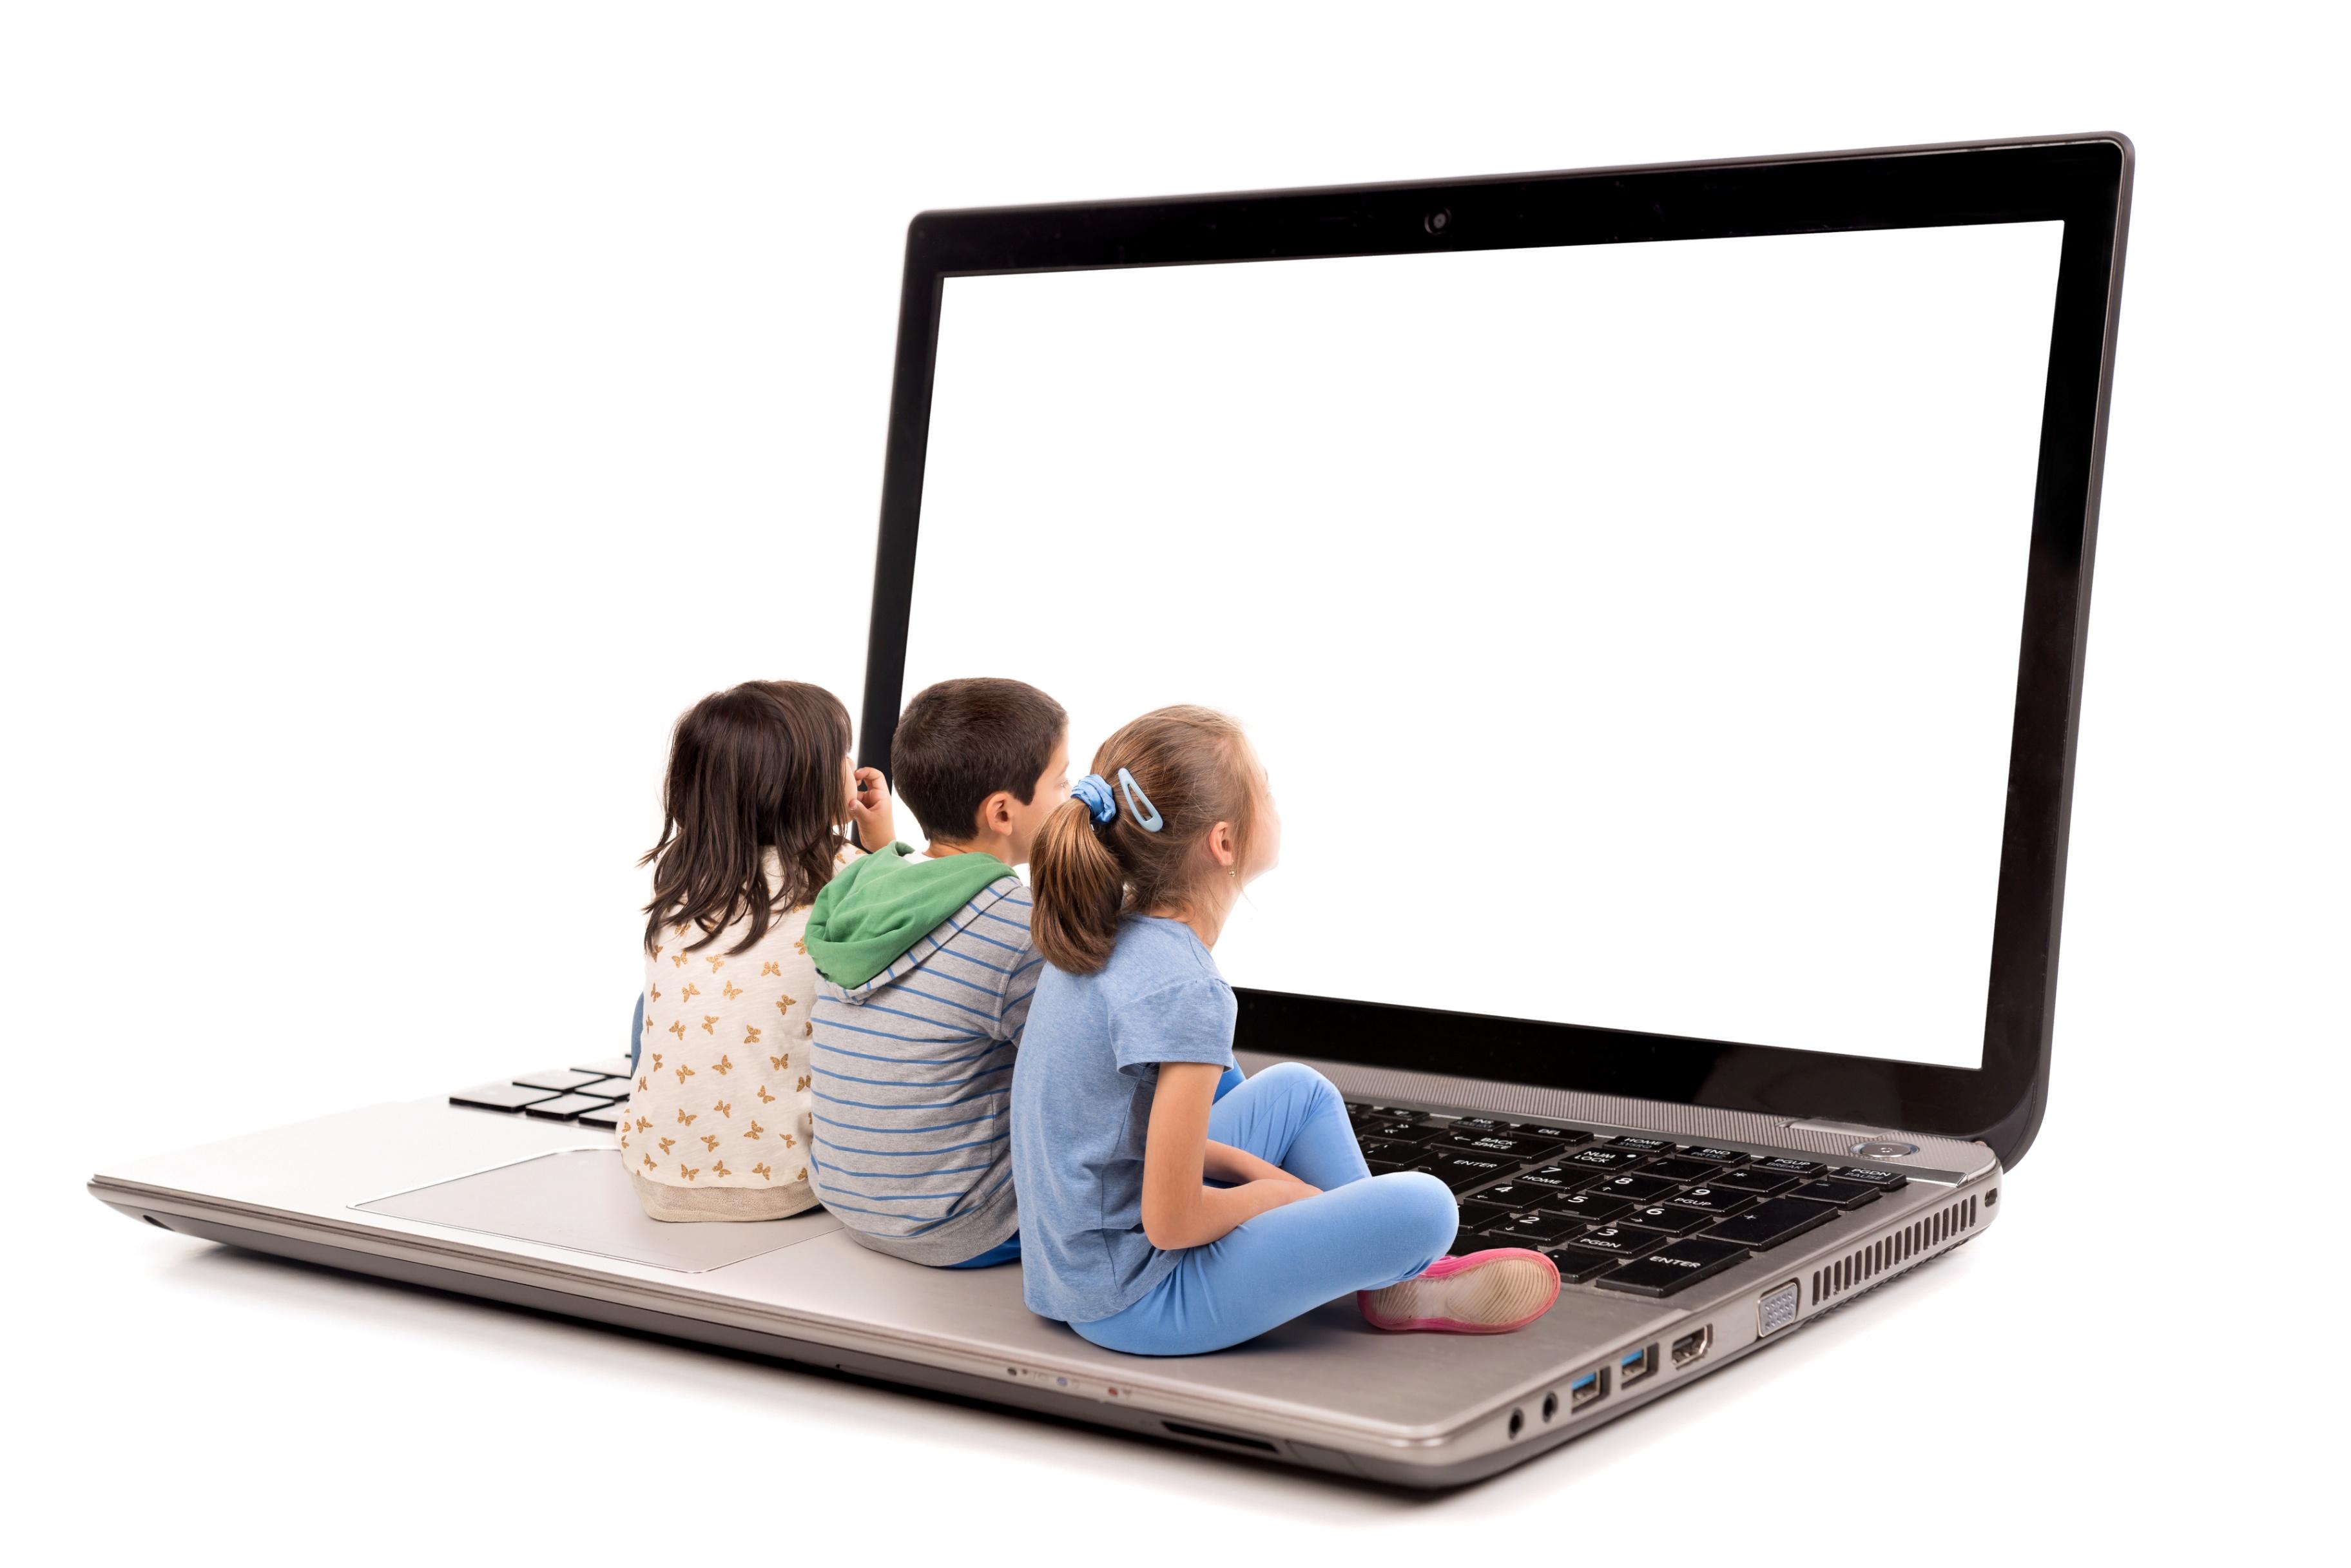 Общение через сеть. Компьютер для детей. Детям об интернете. Компьютерная грамотность для детей. Дошкольник и компьютер.